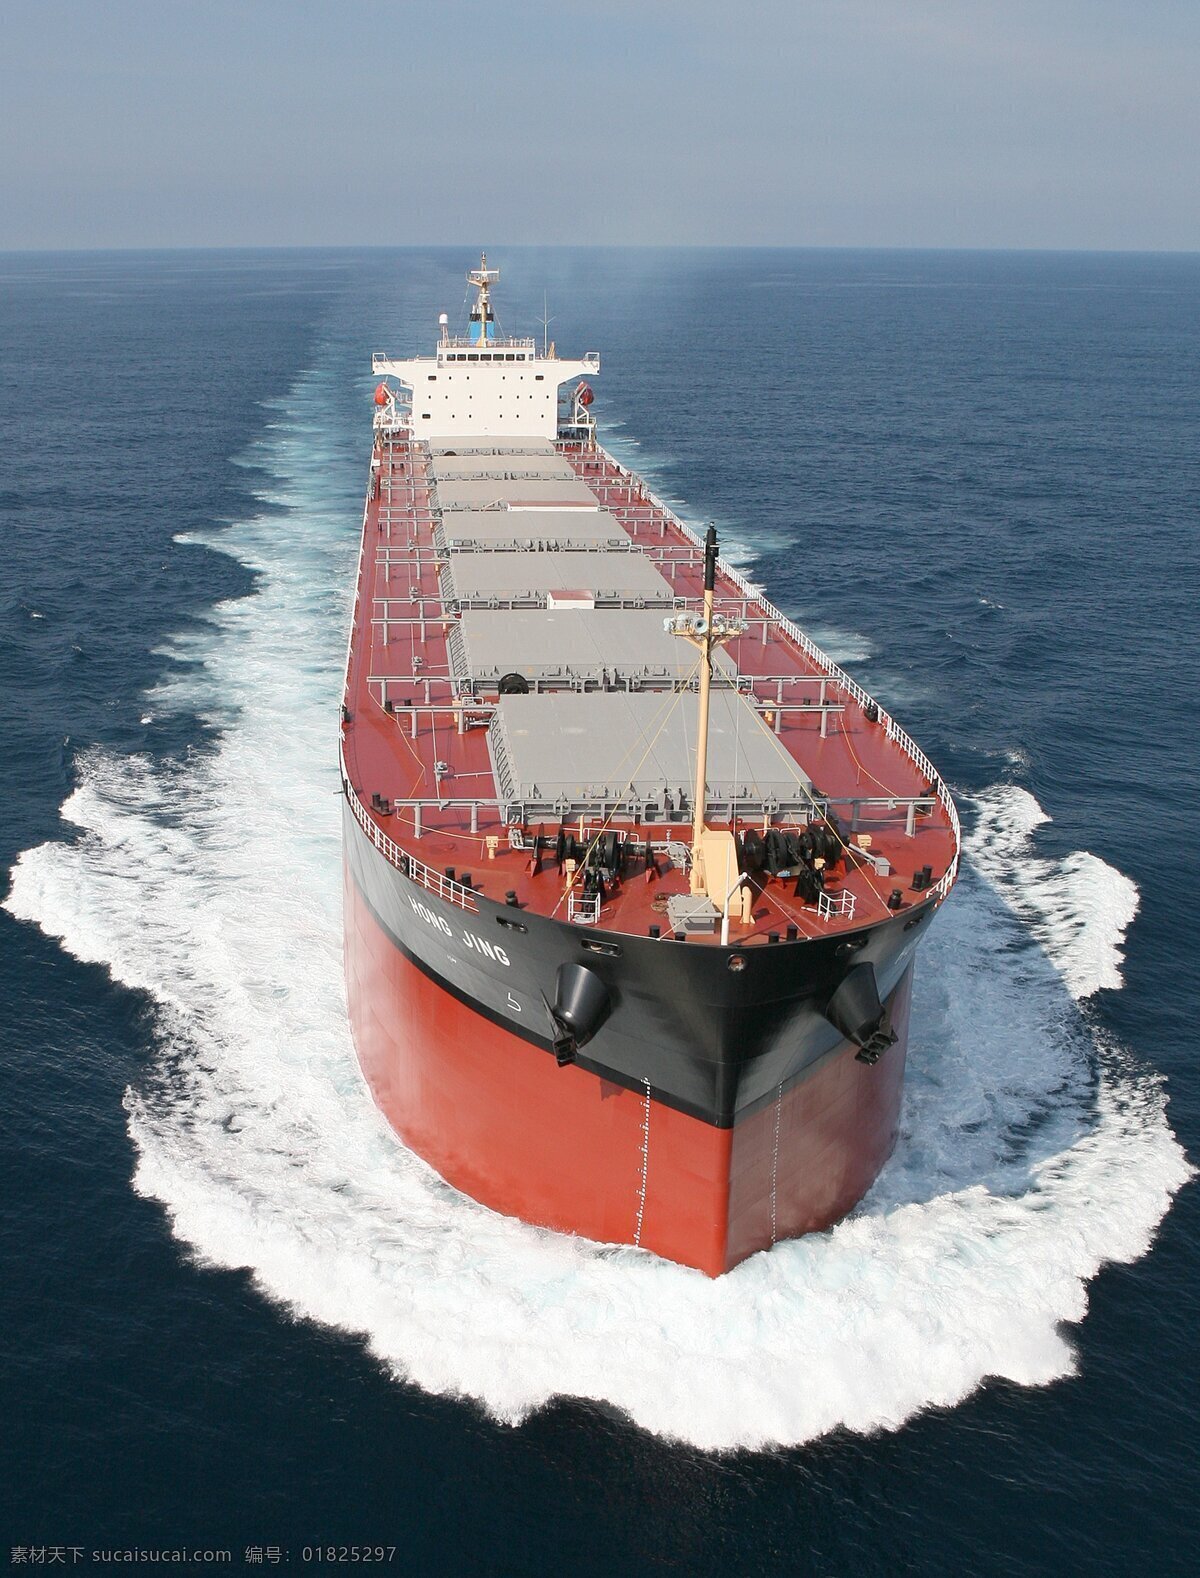 巨轮 远洋运输 集装箱船 船 货船 海轮 货轮 轮船 大船 船舶 船只 航海 航行 航运 豪华 交通工具 现代科技